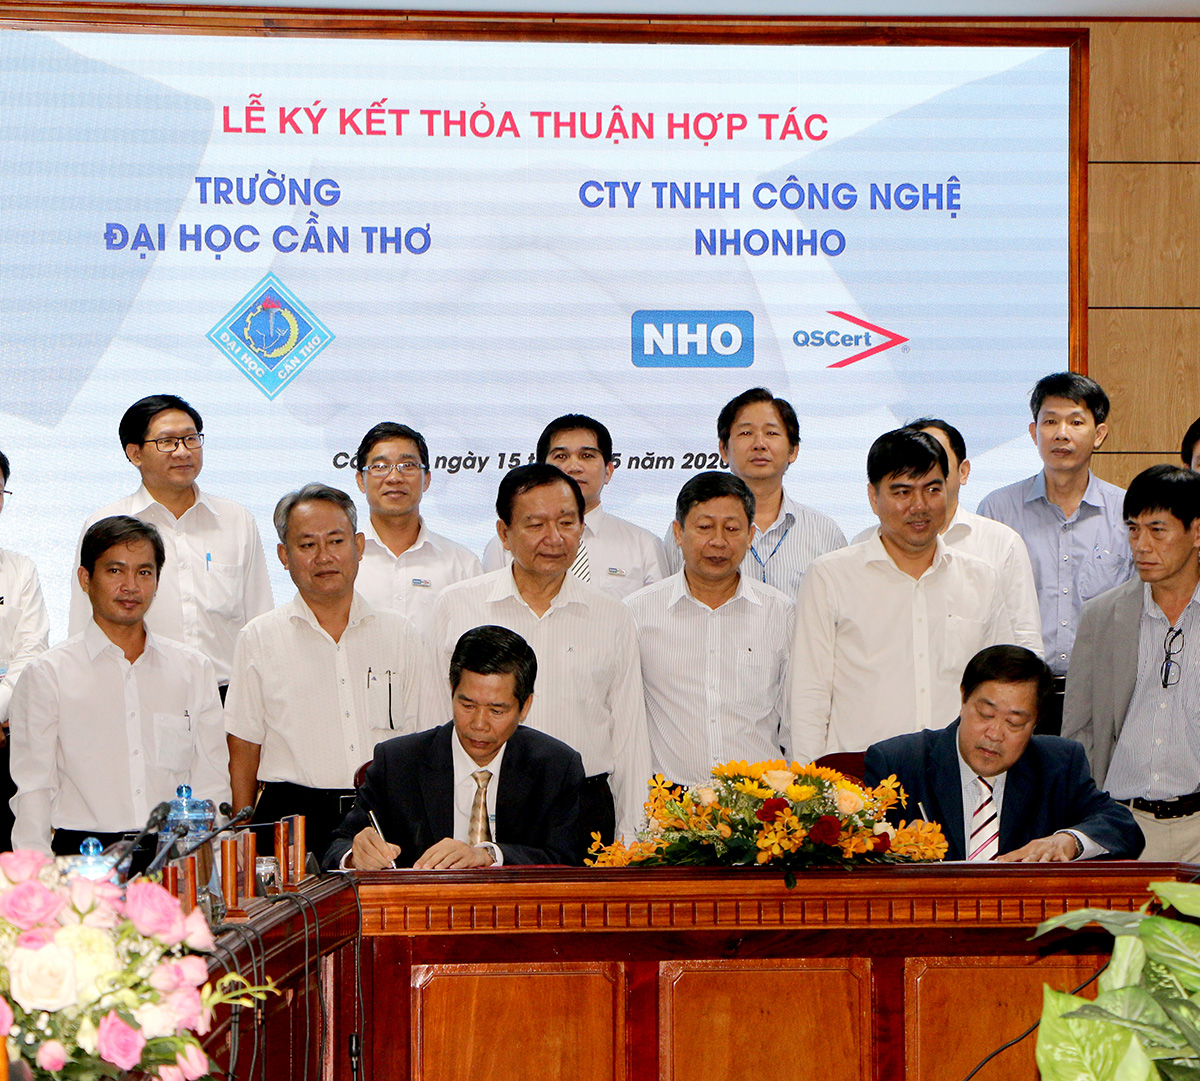 Đại học Cần Thơ và công ty công nghệ NHONHO đang hợp tác để khám phá cách thức các đơn vị trung gian có thể kết nối đổi mới sáng tạo và tạo dựng các quan hệ đối tác thúc đẩy tăng trưởng kinh tế Việt Nam trong tương lai.